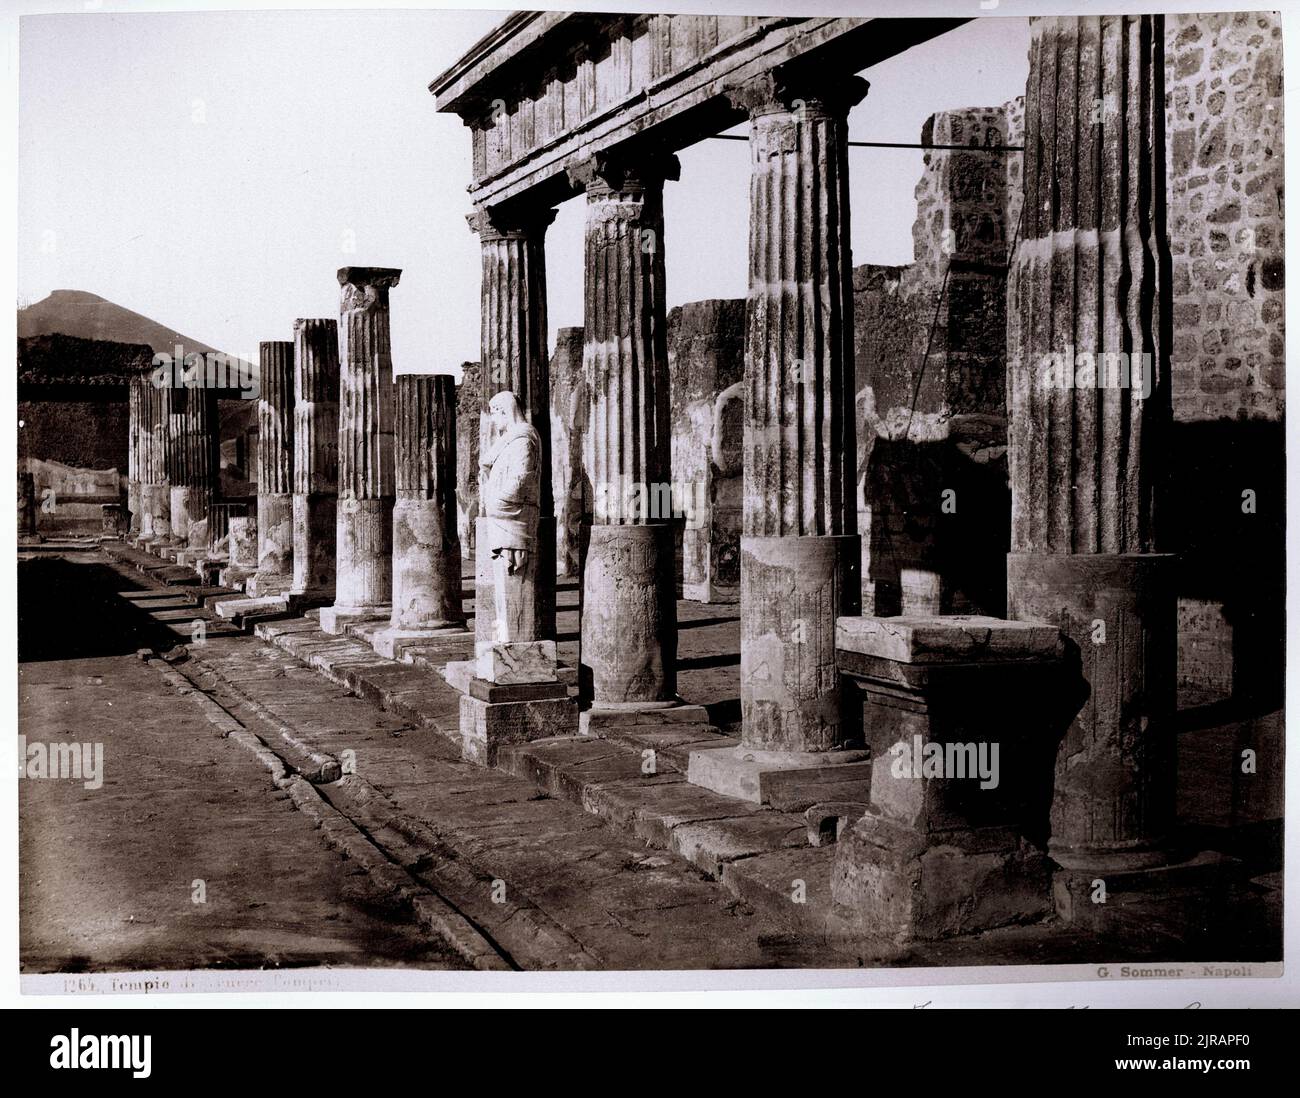 Der Tempel der Venus, Pompeji, Italien, um 1872. Fotografie von Giorgio Sommer (1834 - 1914). Stockfoto